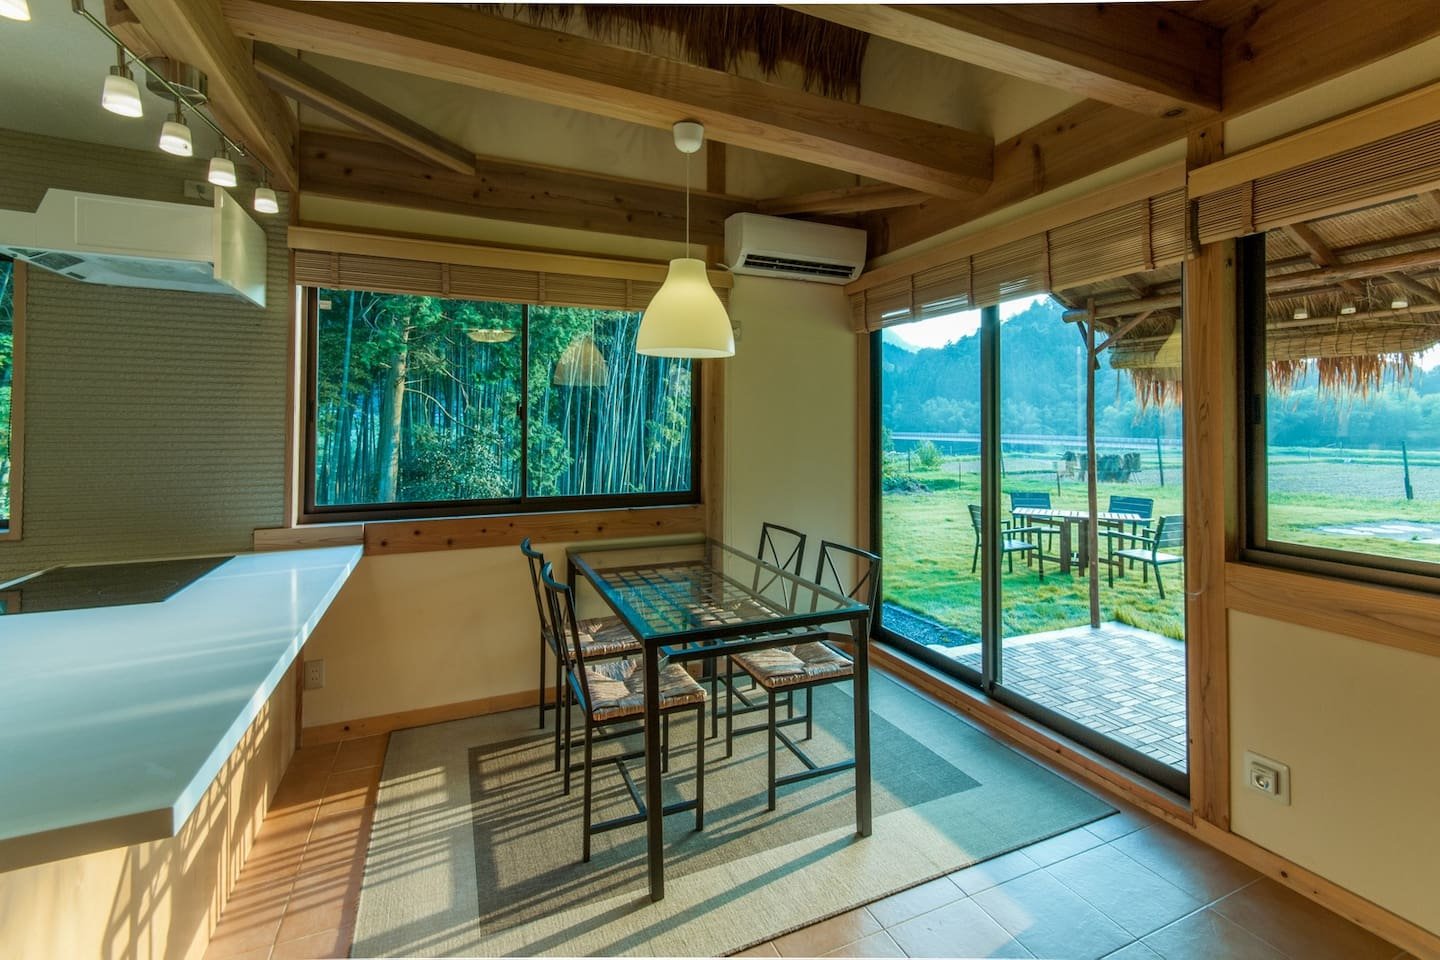 บ้านไม้ชั้นครึ่งสไตล์ญี่ปุ่น ประยุกต์ร่วมสมัย ในพื้นที่ชนบทล้อมรอบด้วยภูเขาและนาข้าว